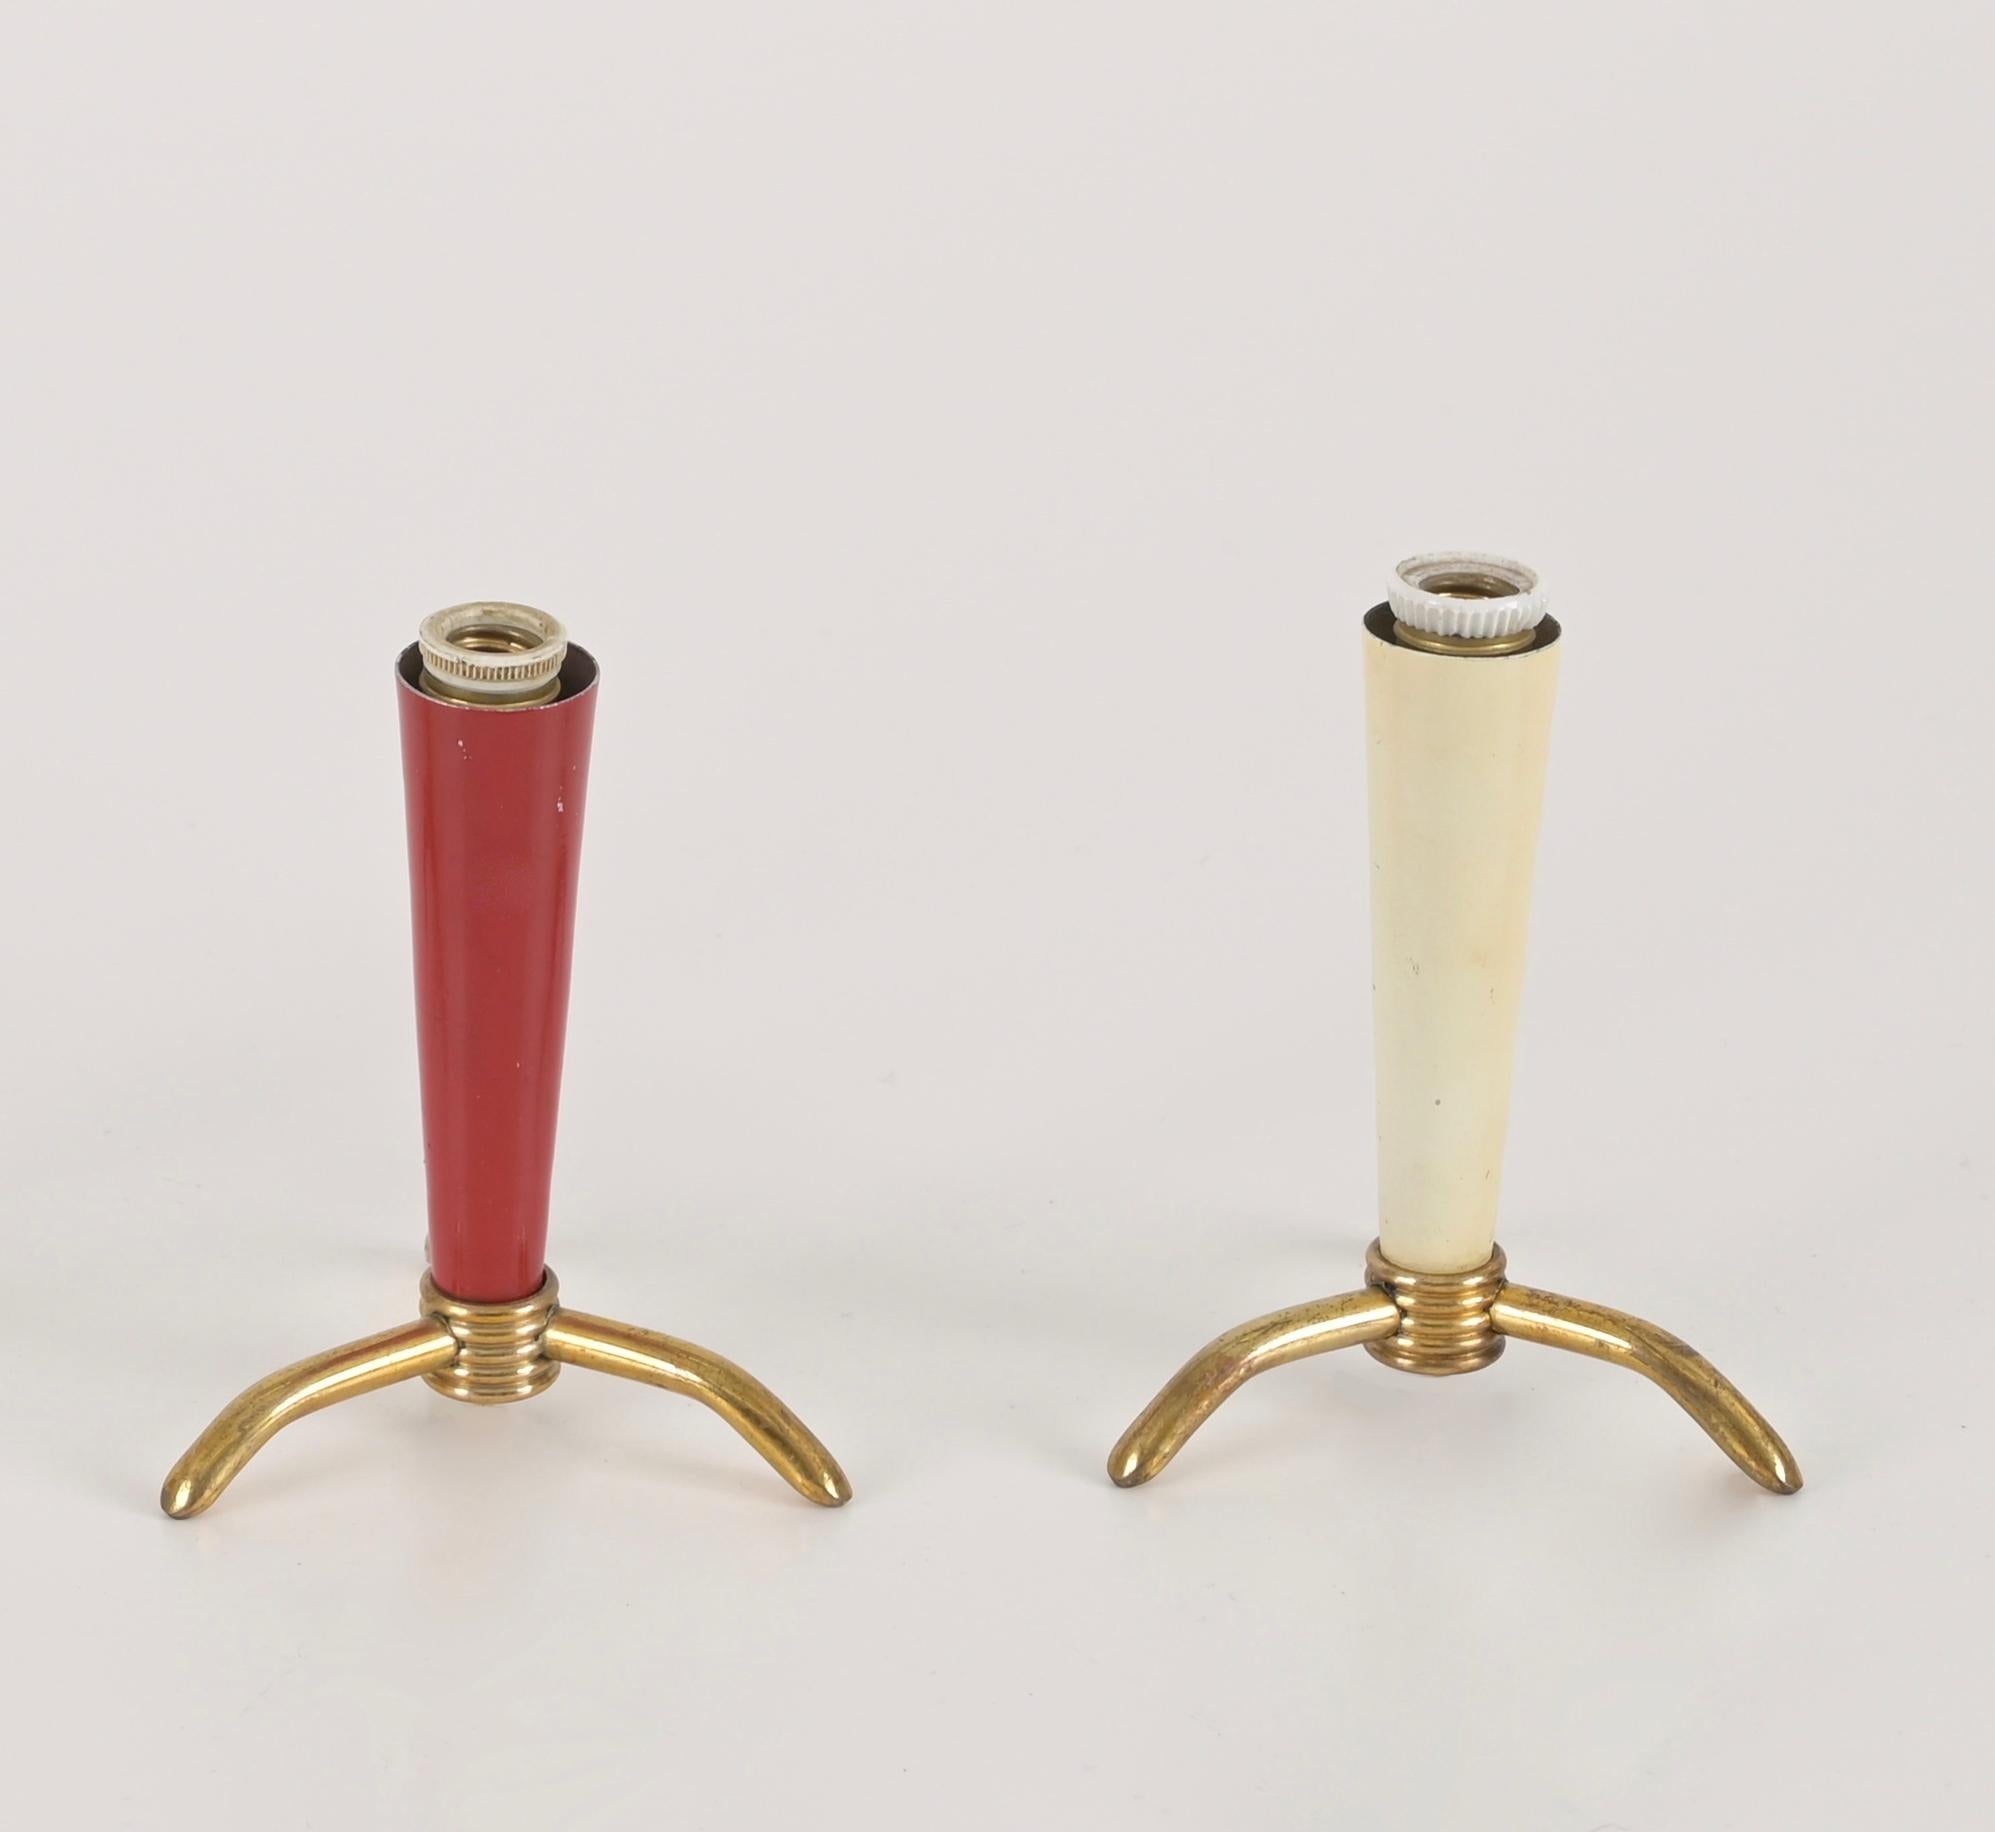 Charmante paire de lampes de table tripodes en laiton et métal émaillé. Ces jolies lampes sont attribuées à Stilnovo et ont été fabriquées en Italie dans les années 1950.

Les petites lampes sont dotées d'un charmant abat-jour conique en métal